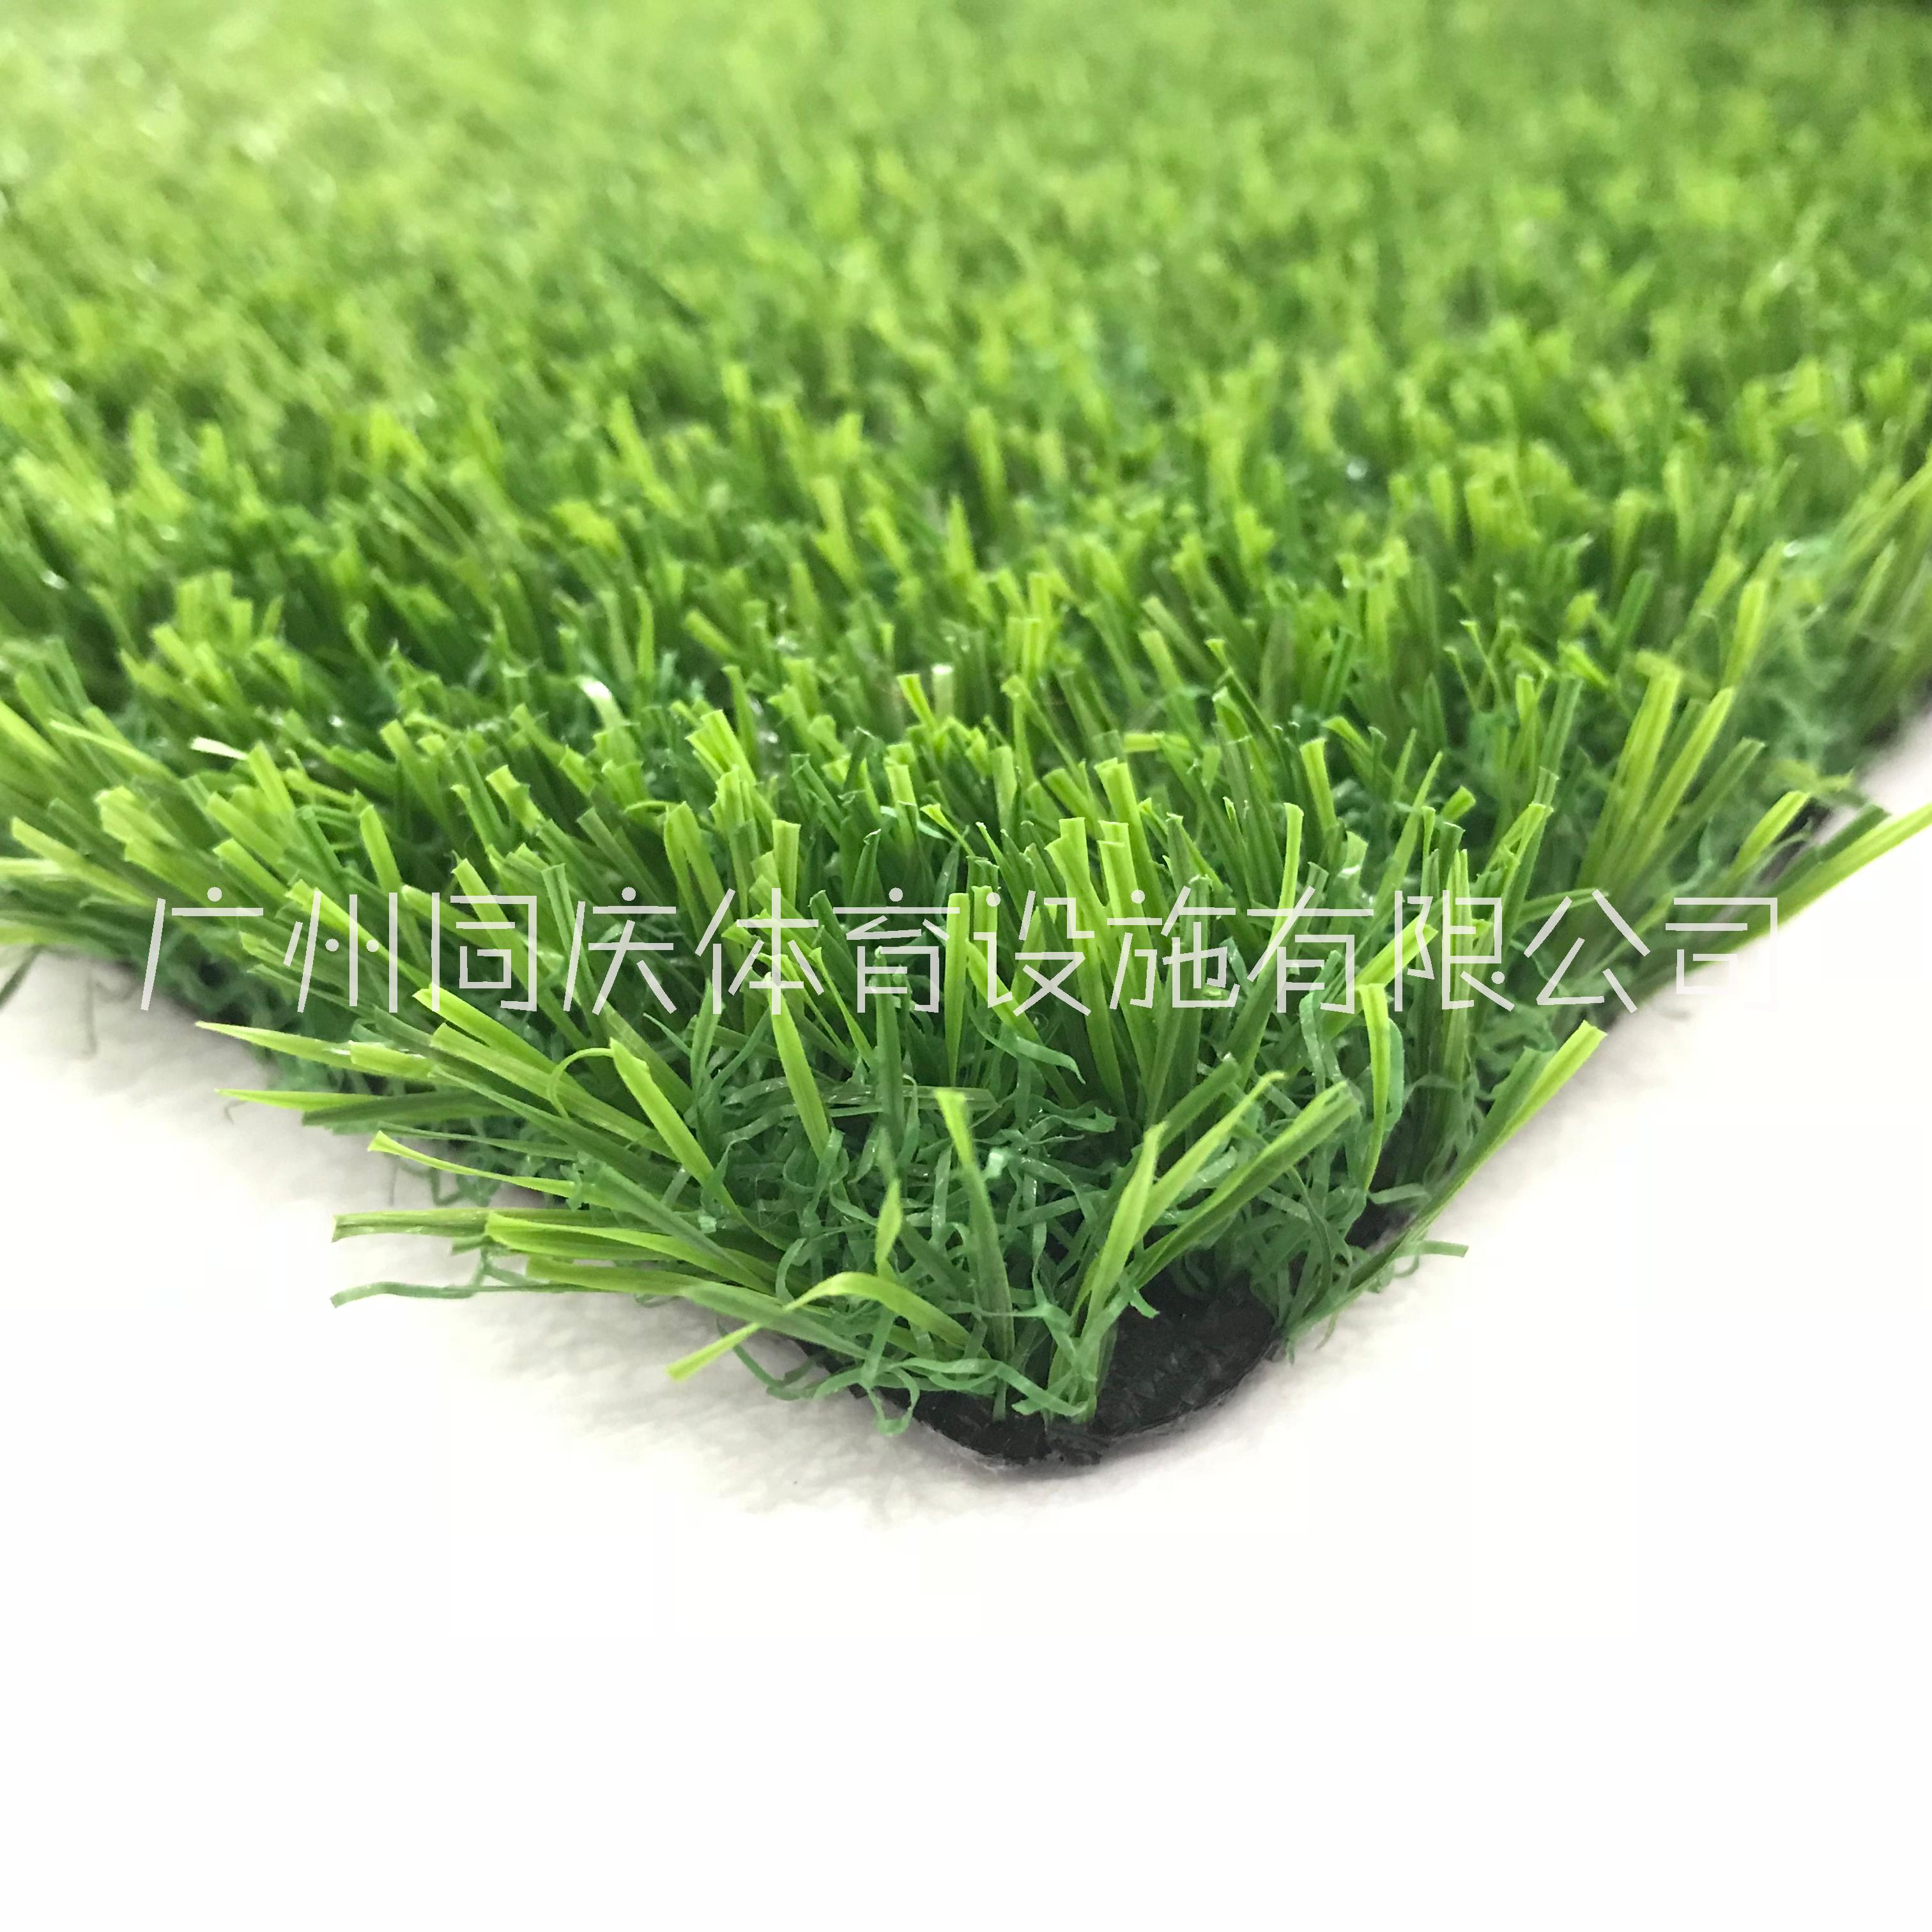 广州市仿真人造草塑料幼儿园户外草坪地毯厂家仿真人造草塑料幼儿园户外草坪地毯